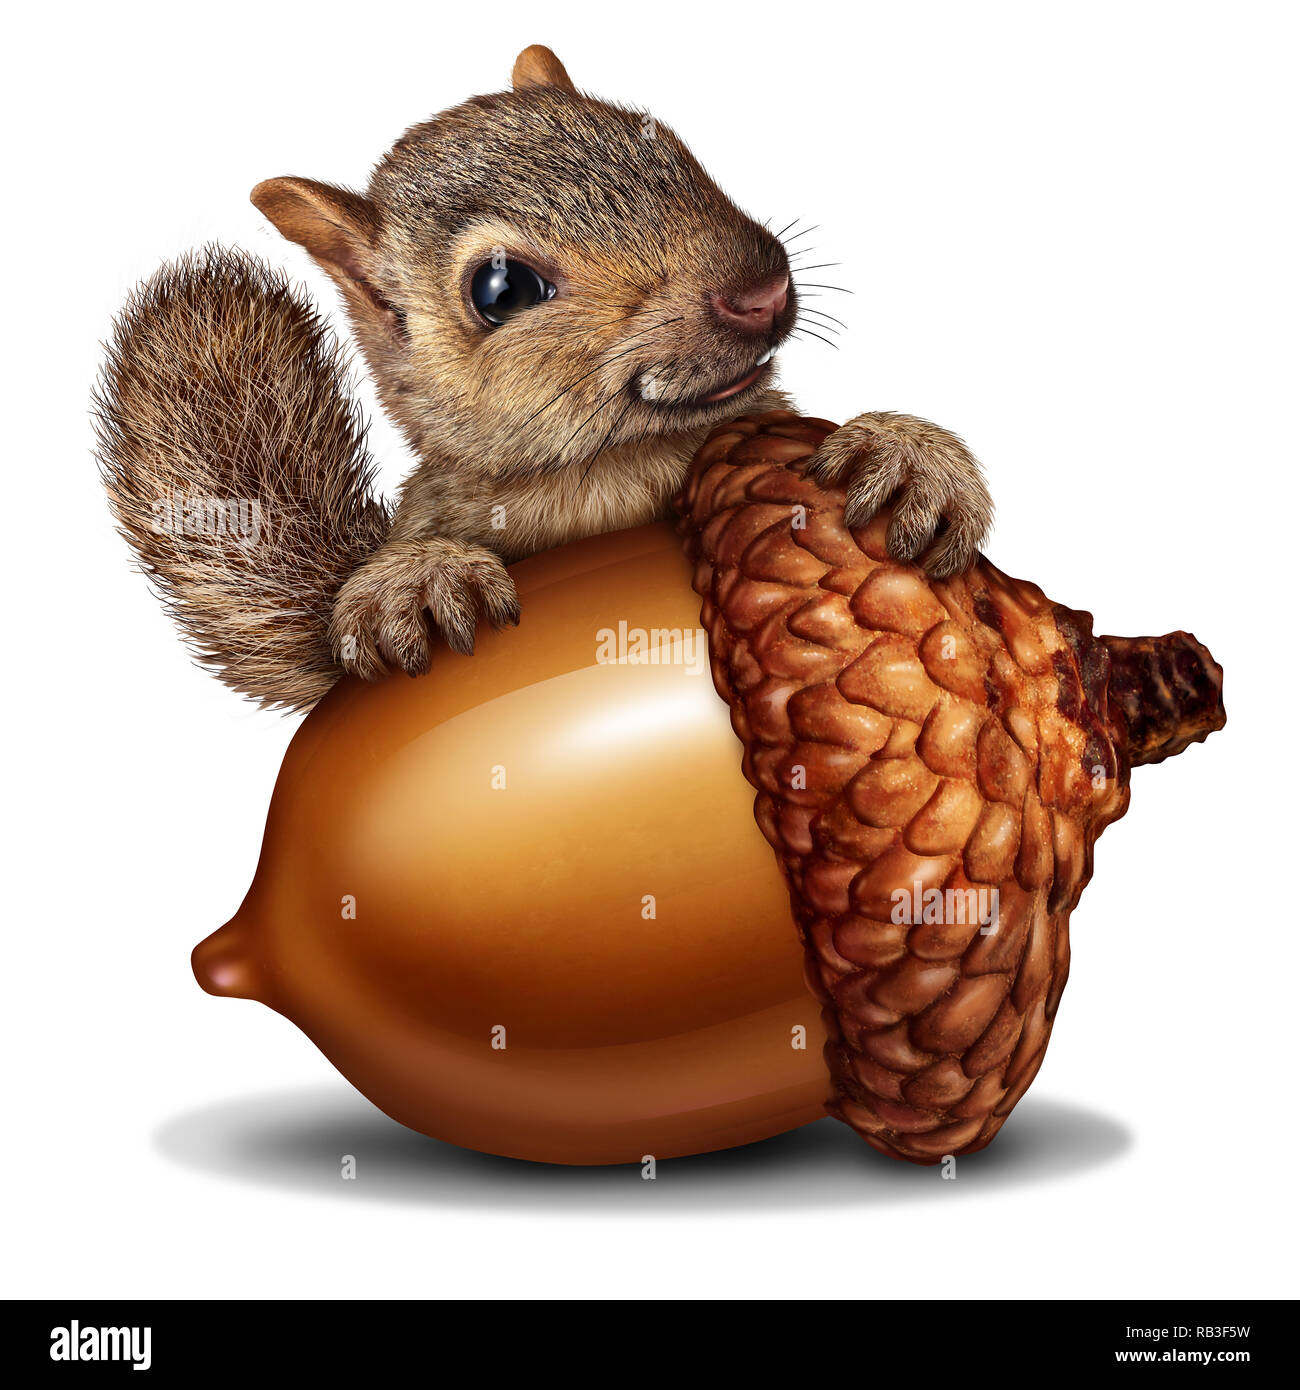 Eichhörnchen mit einem riesigen Acorn Tree Mutter als Reichtum oder wohlhabende Metapher für geschäftliche und finanzielle Einsparungen in einer 3D-Darstellung. Stockfoto